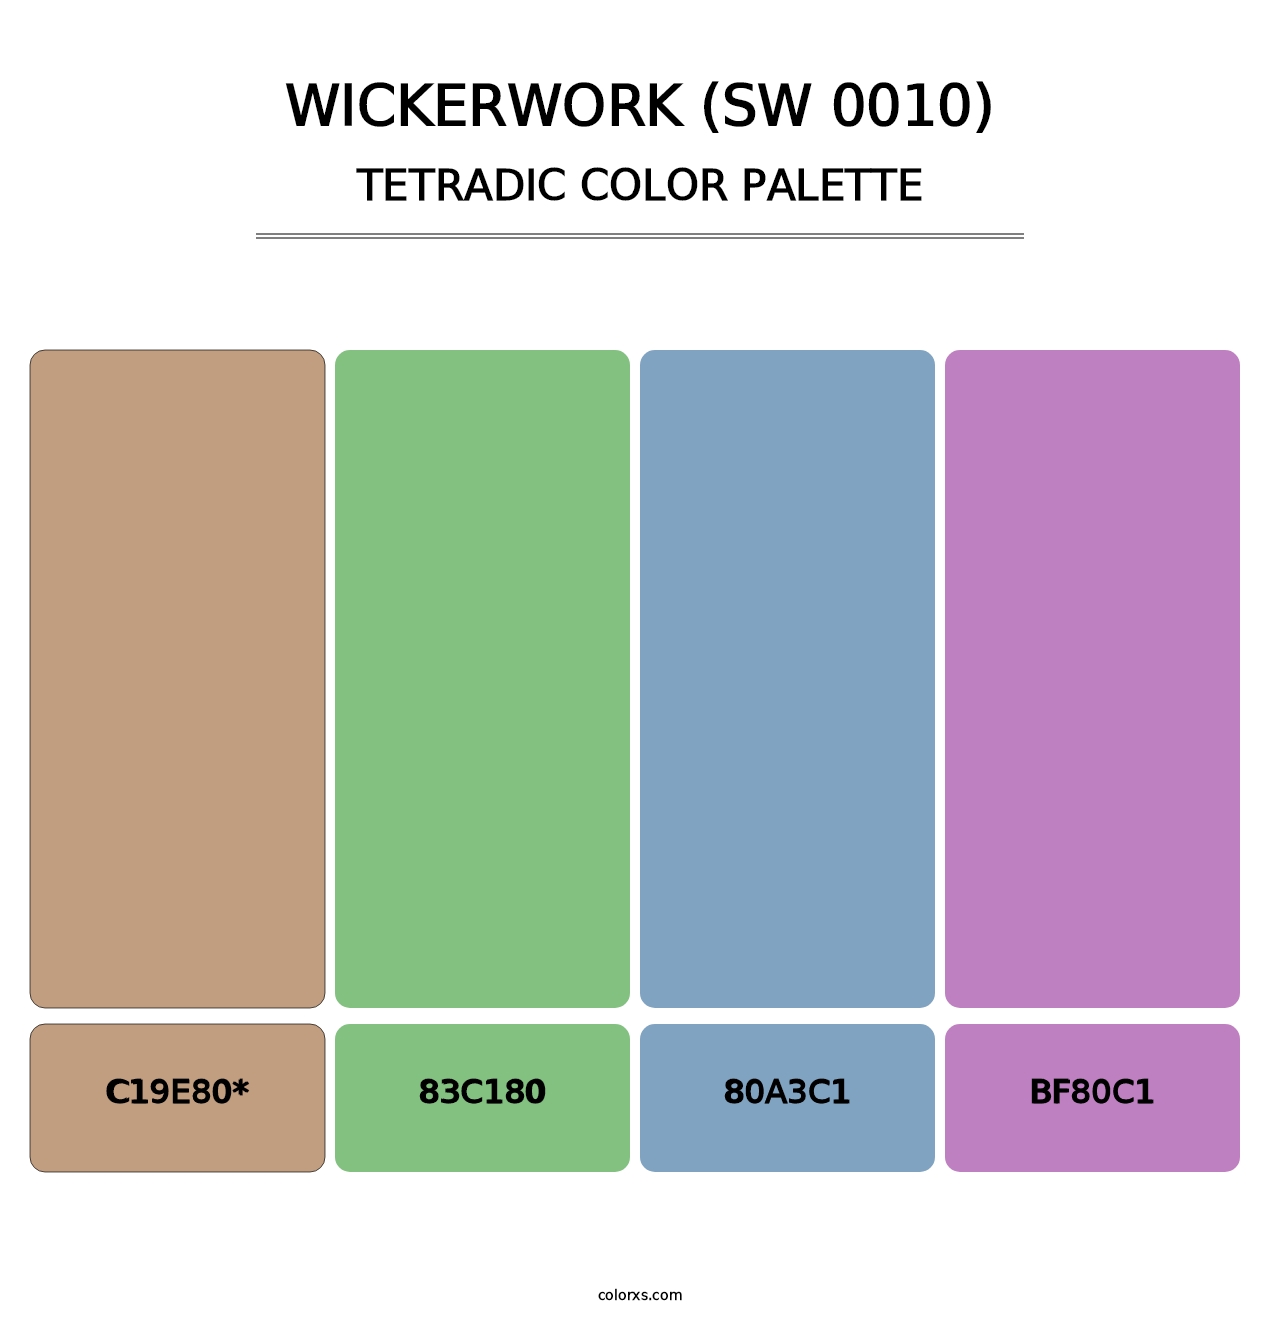 Wickerwork (SW 0010) - Tetradic Color Palette